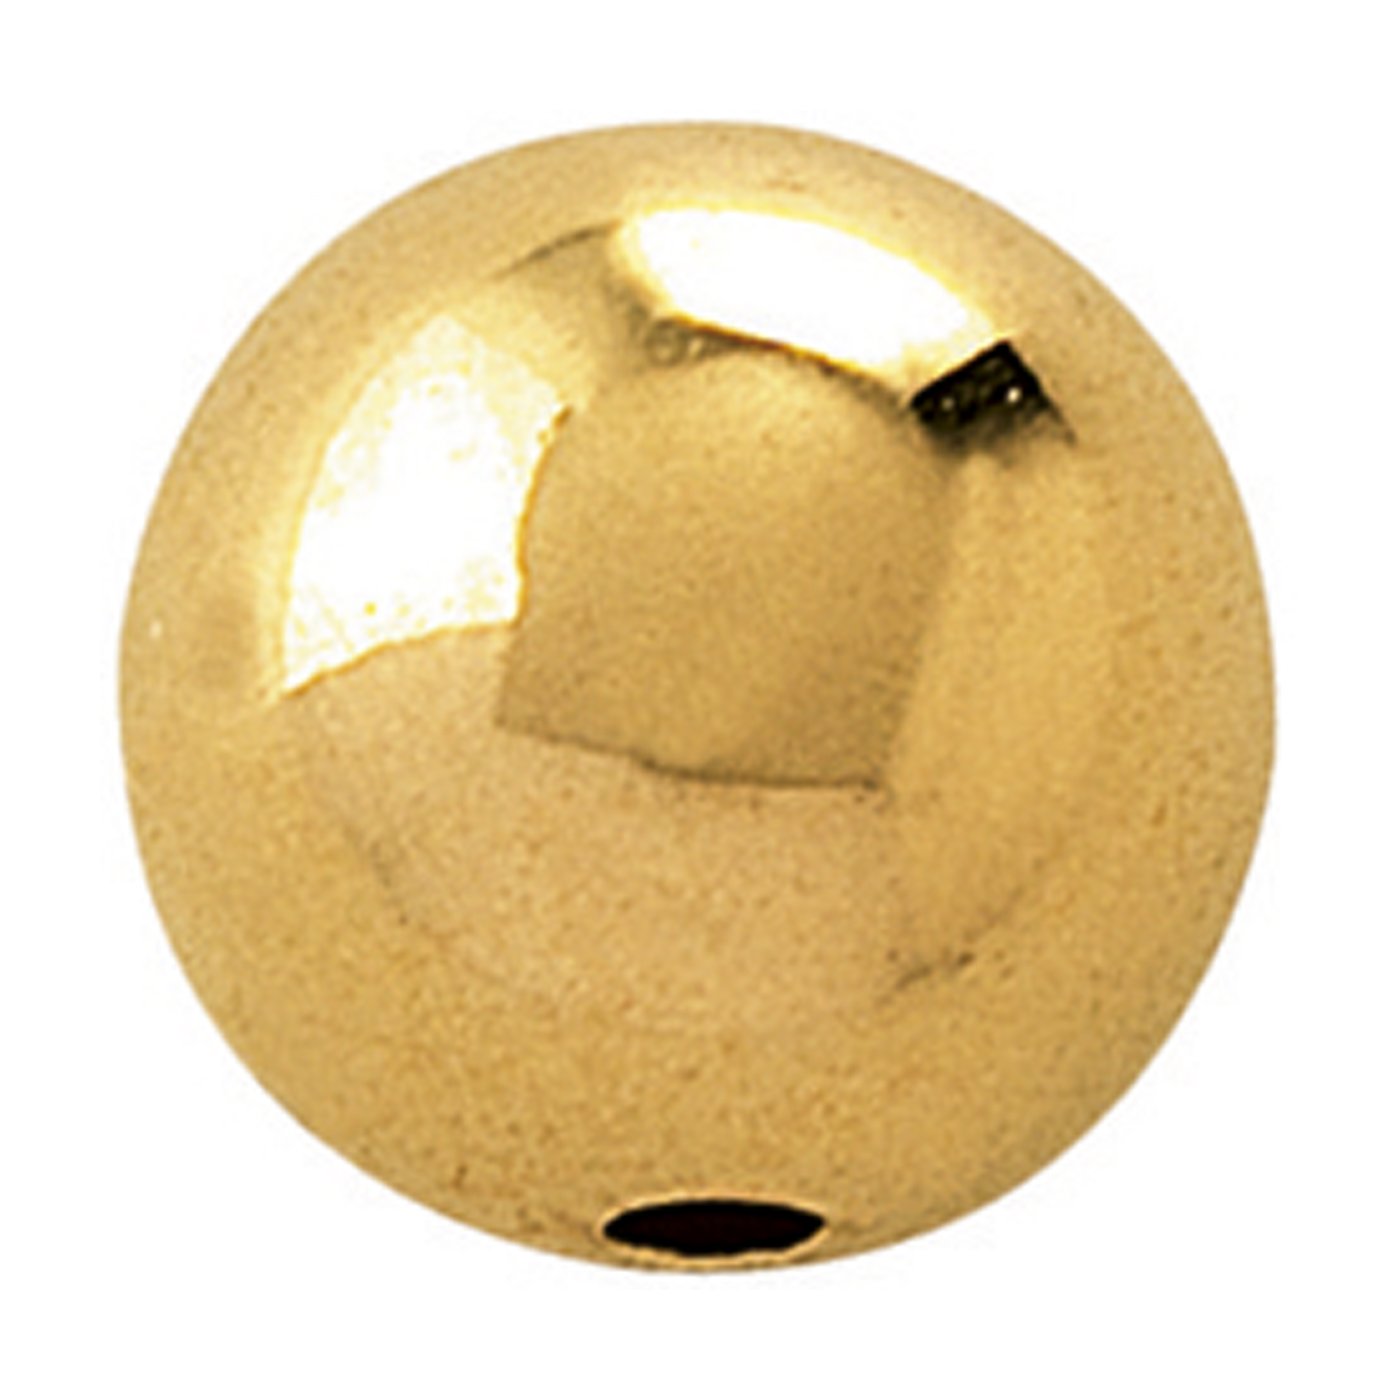 2-Hole Ball, 750G Polished, ø 5 mm - 1 piece